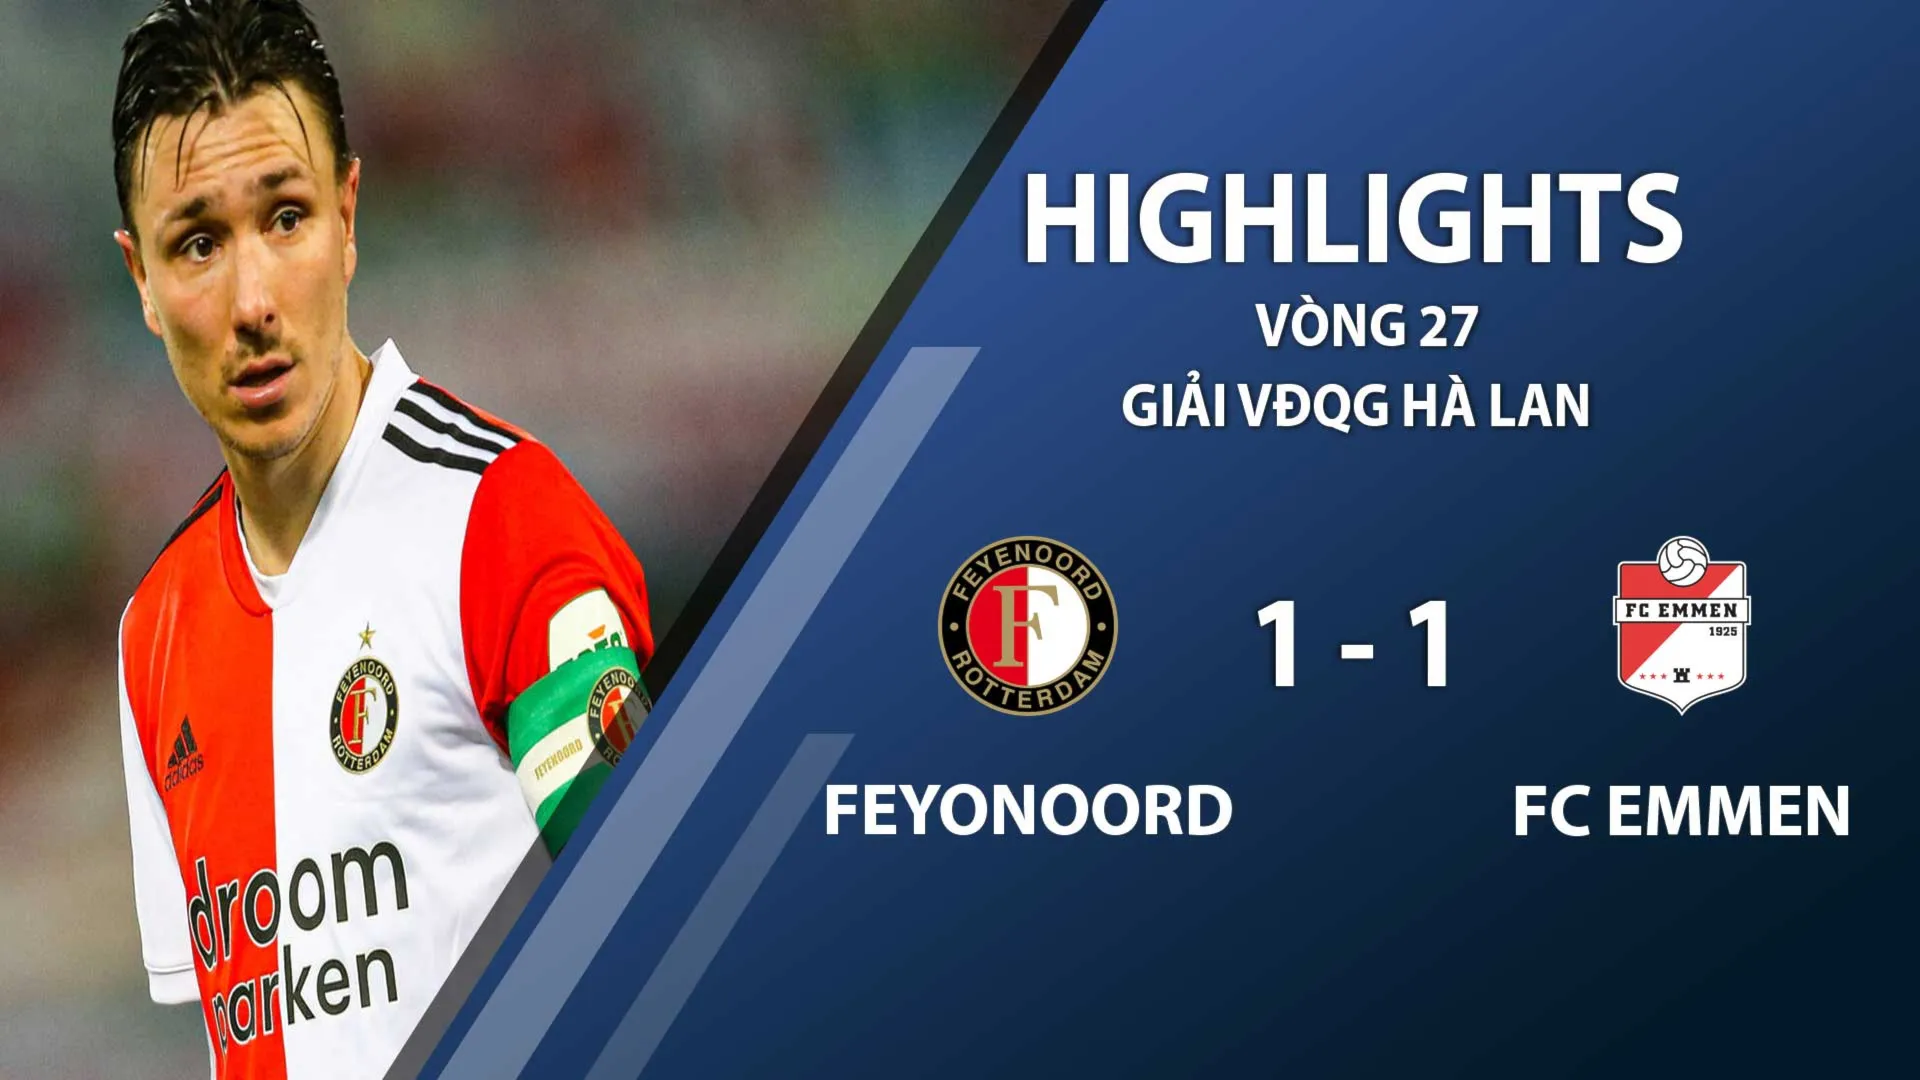 Highlights Feyenoord 1-1 FC Emmen (vòng 27 giải VĐQG Hà Lan 2020/21)